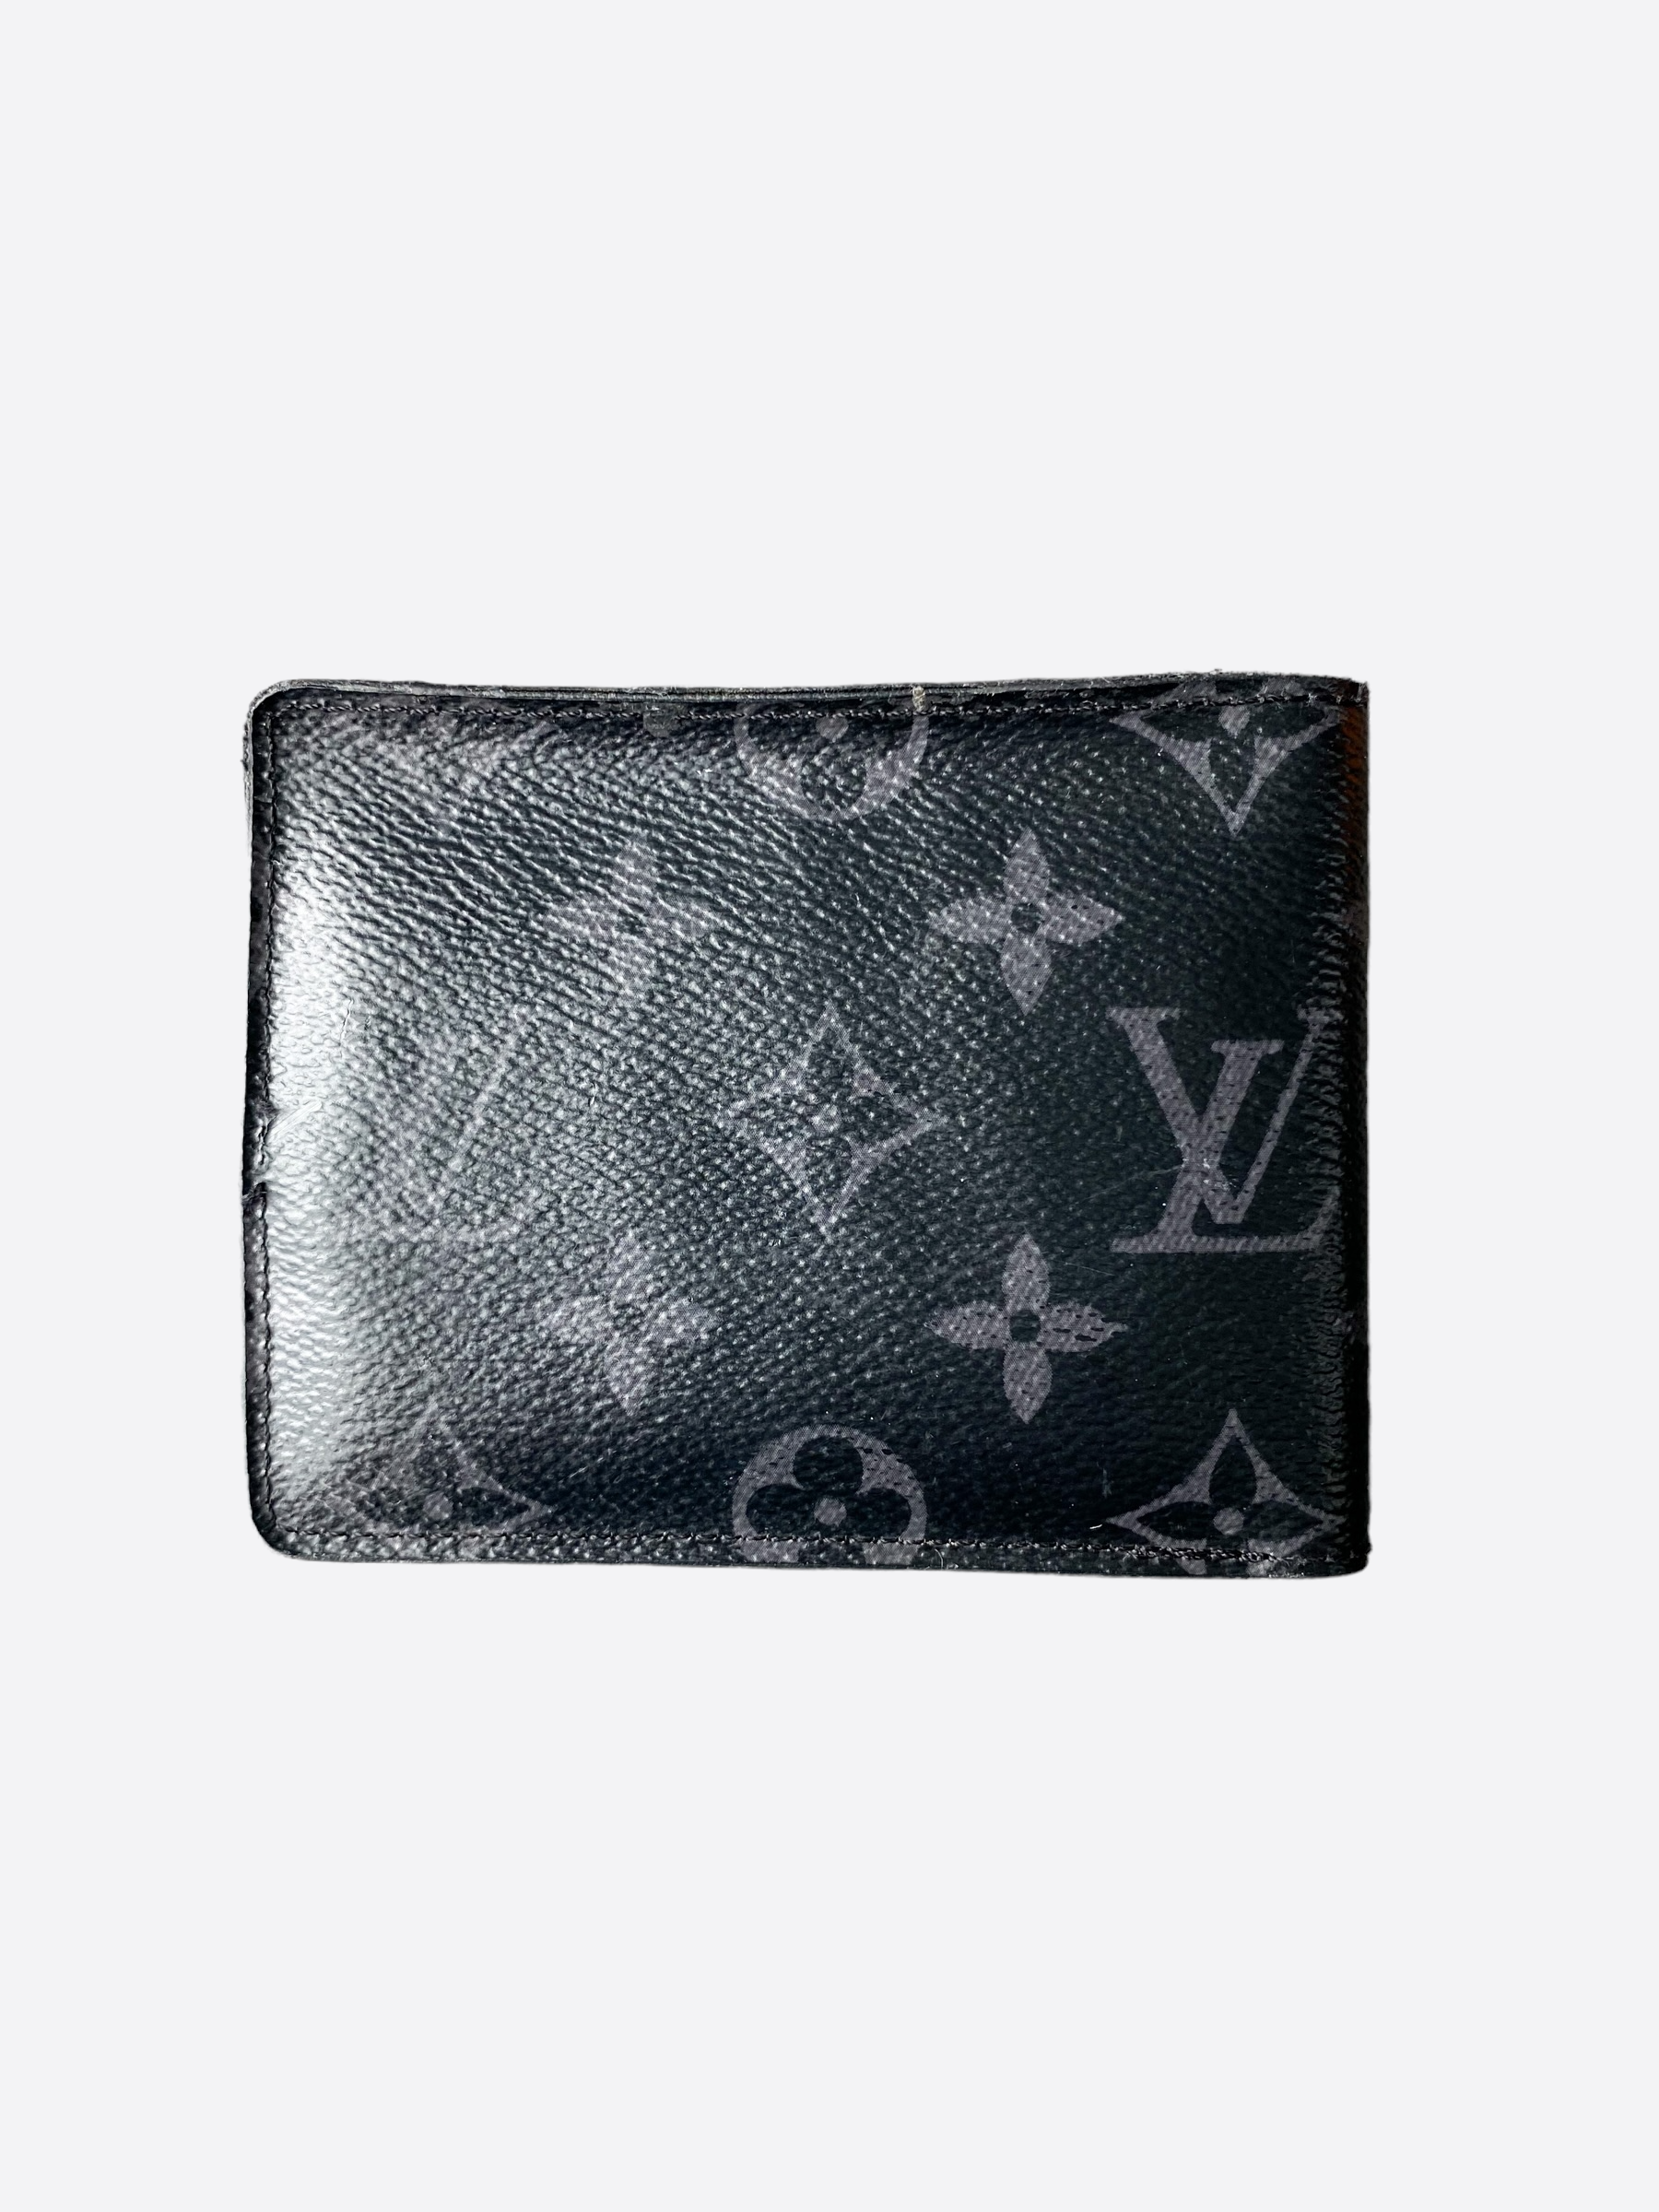 Preowned Authentic Louis Vuitton Monogram Eclipse Multiple Wallet